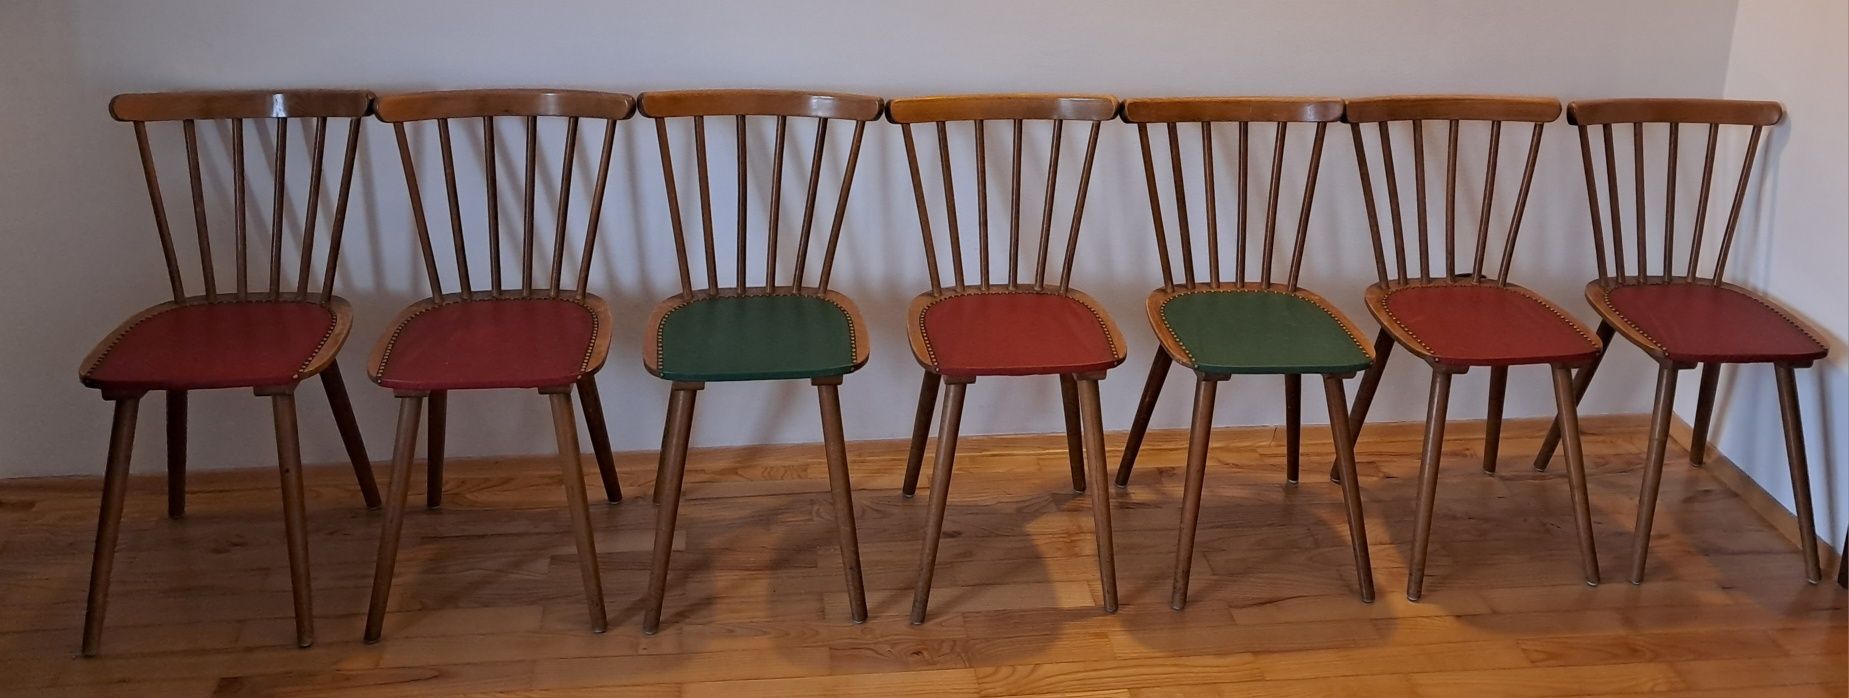 krzesło patyczak krzesła PATYCZAKI krzesło vintage krzesła drewniane